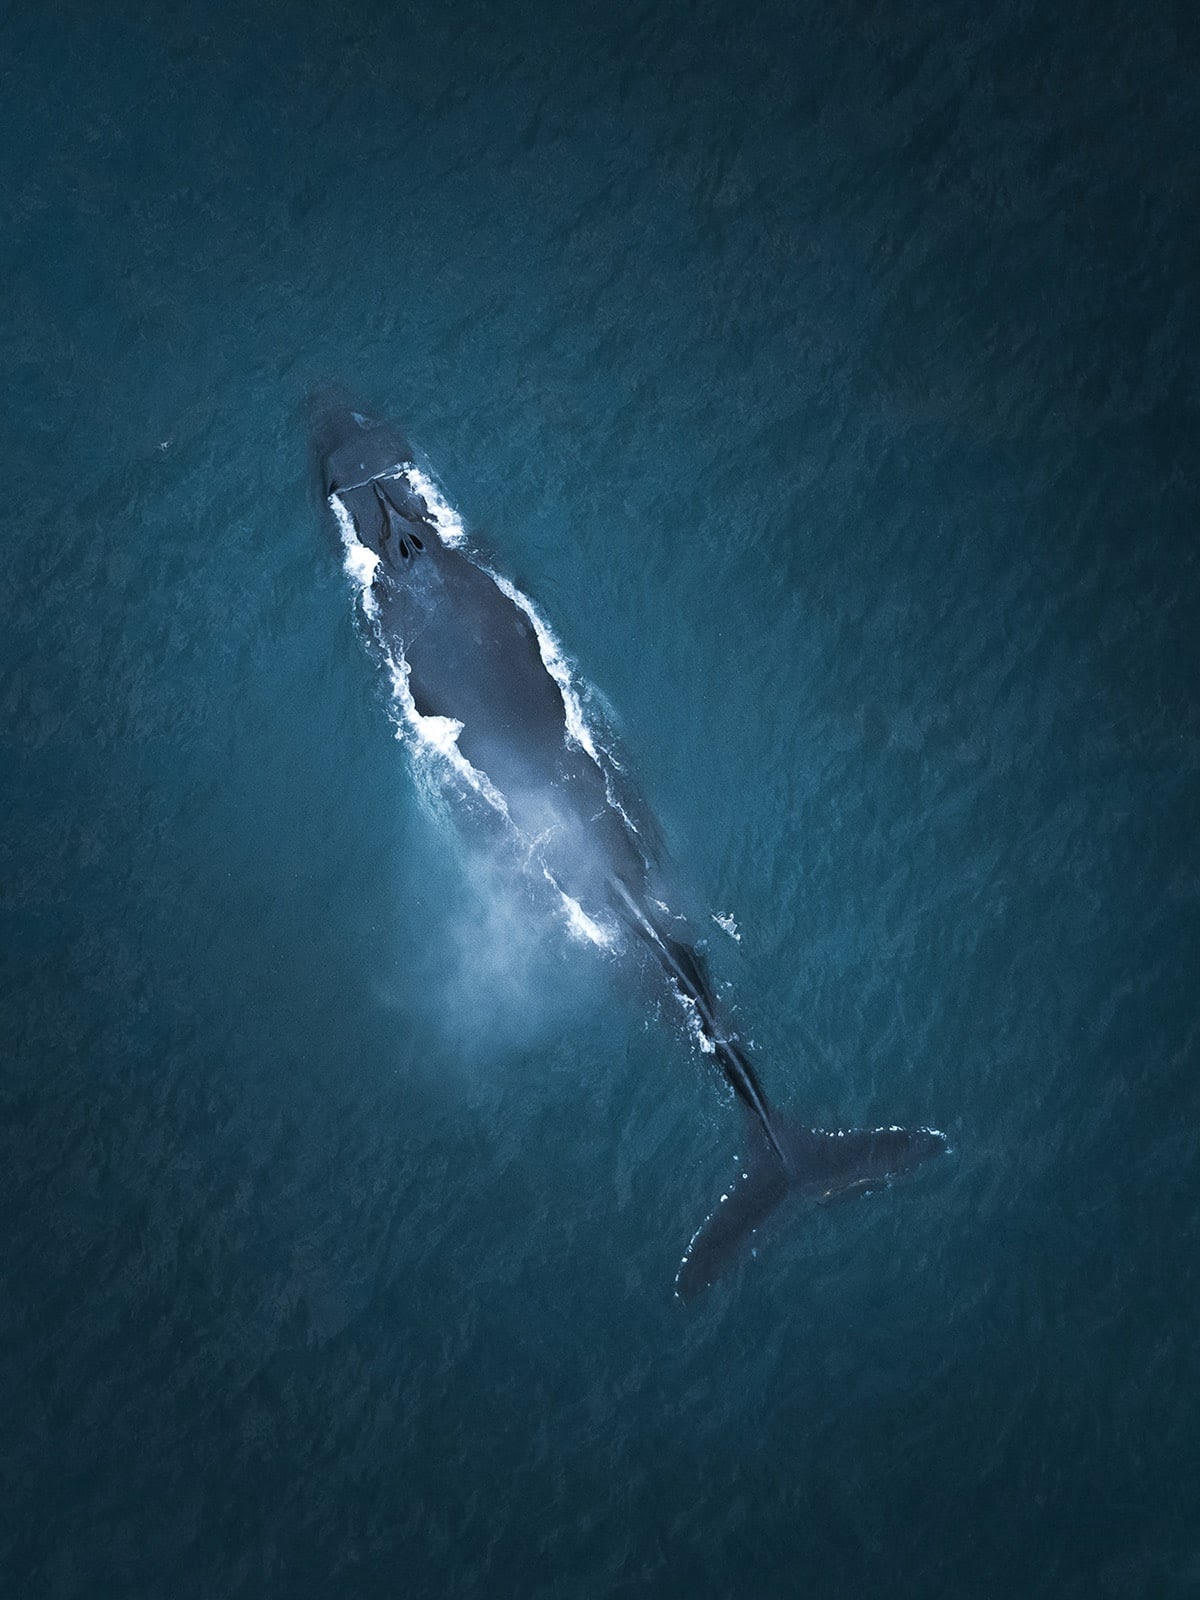 Tour độc đáo ngắm cá voi bảo vệ môi trường ở Iceland - 5